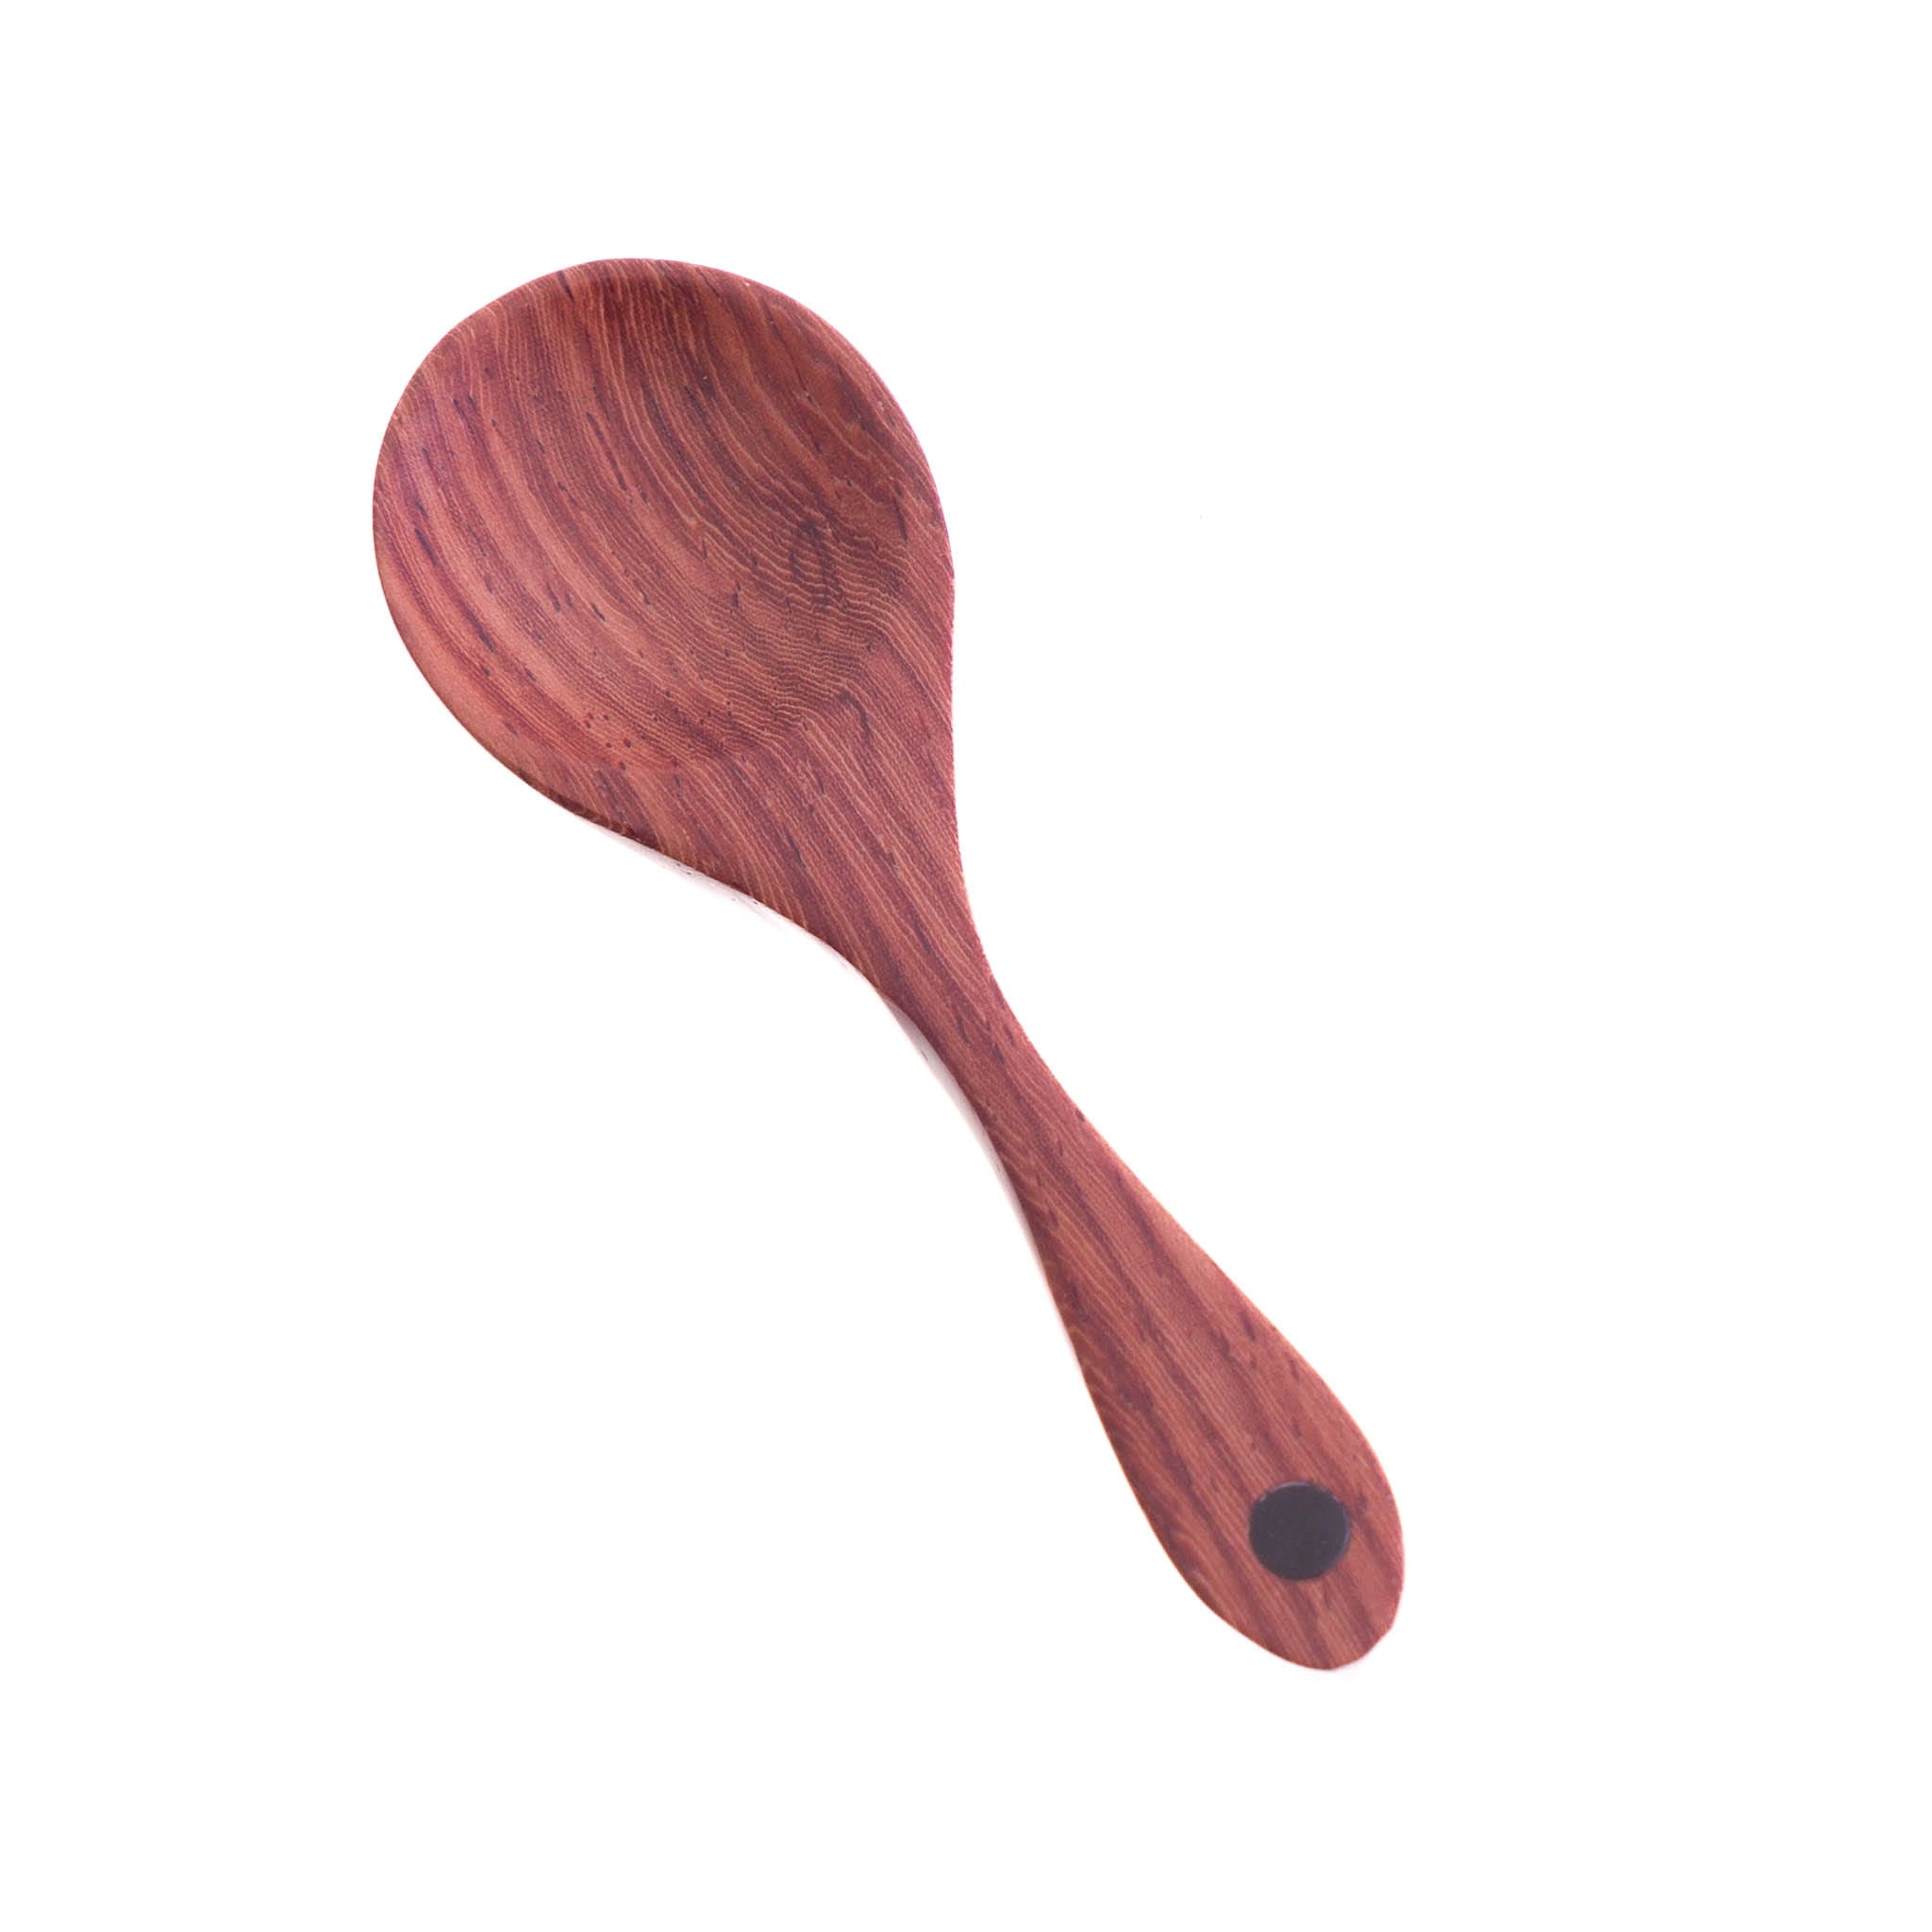 Sarah Petherick Salt & Pepper Spoon, Wood